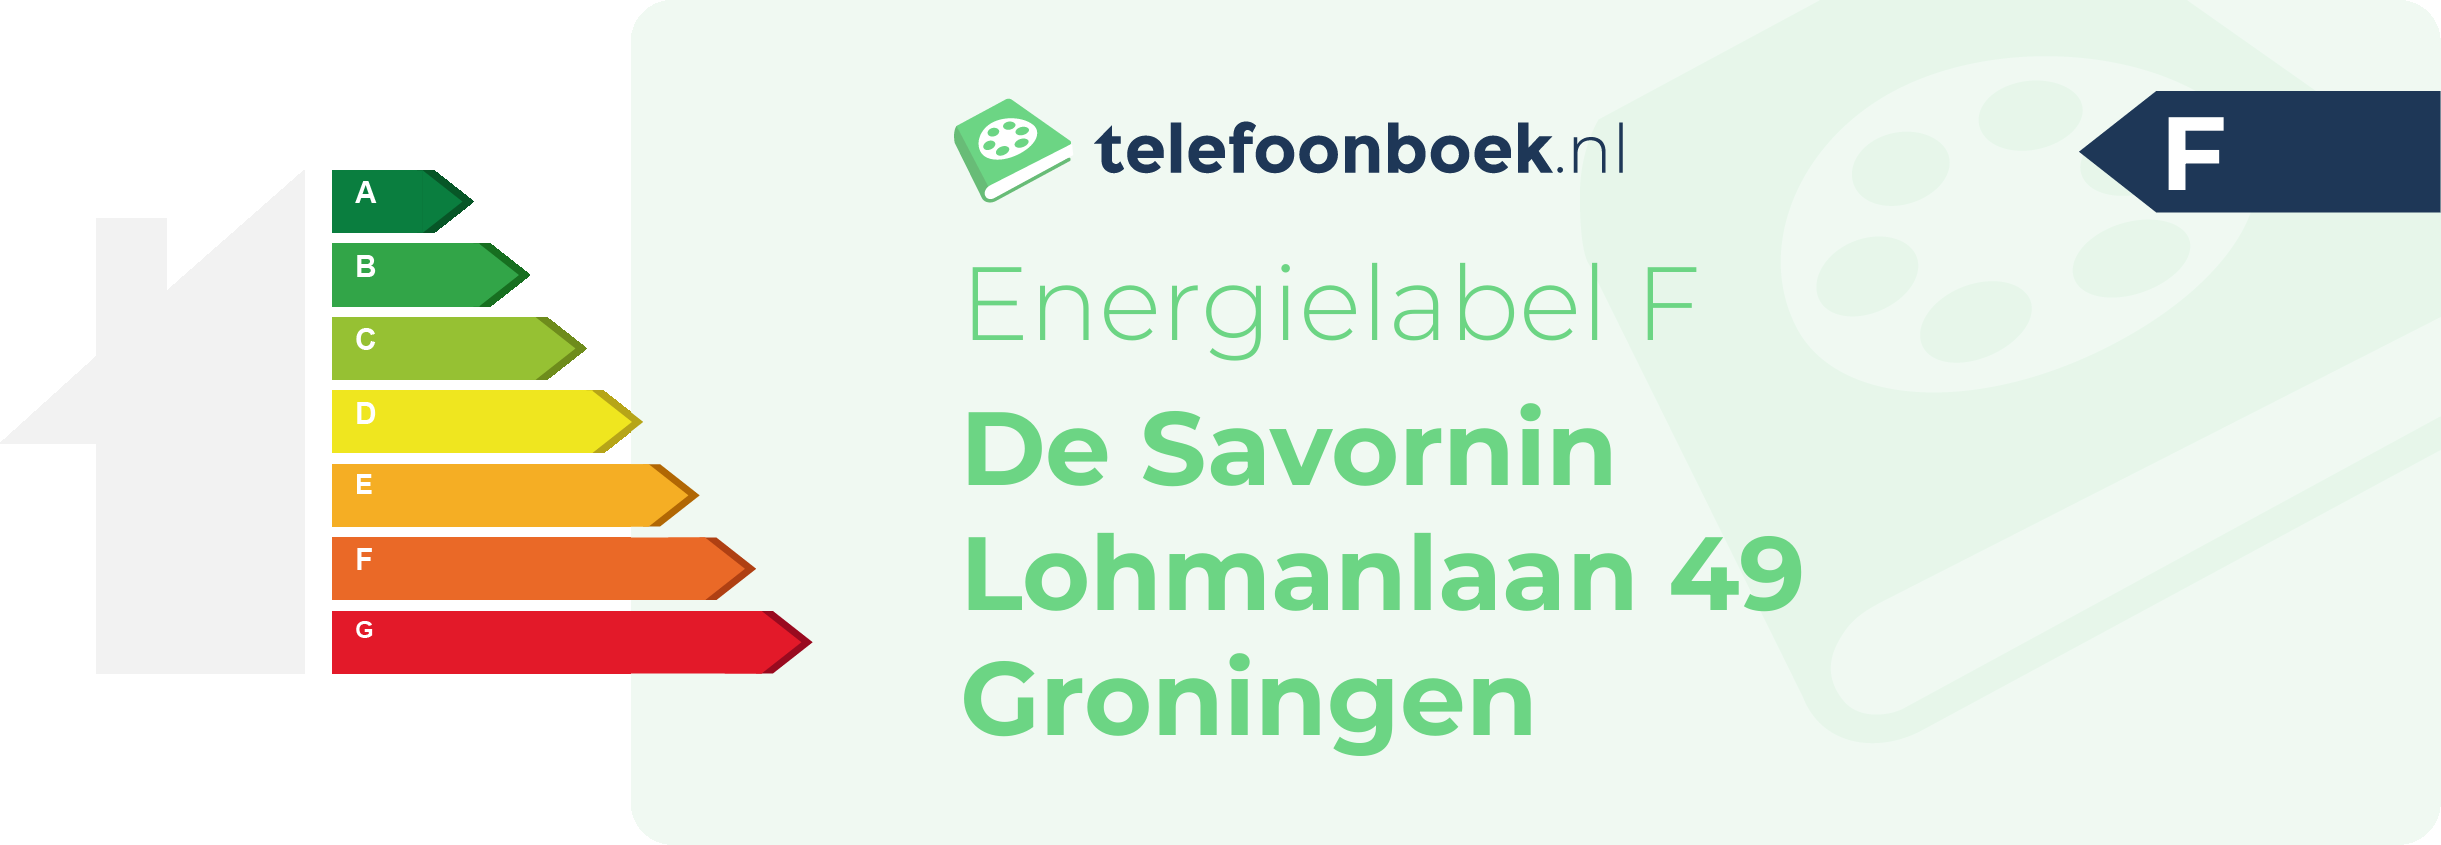 Energielabel De Savornin Lohmanlaan 49 Groningen